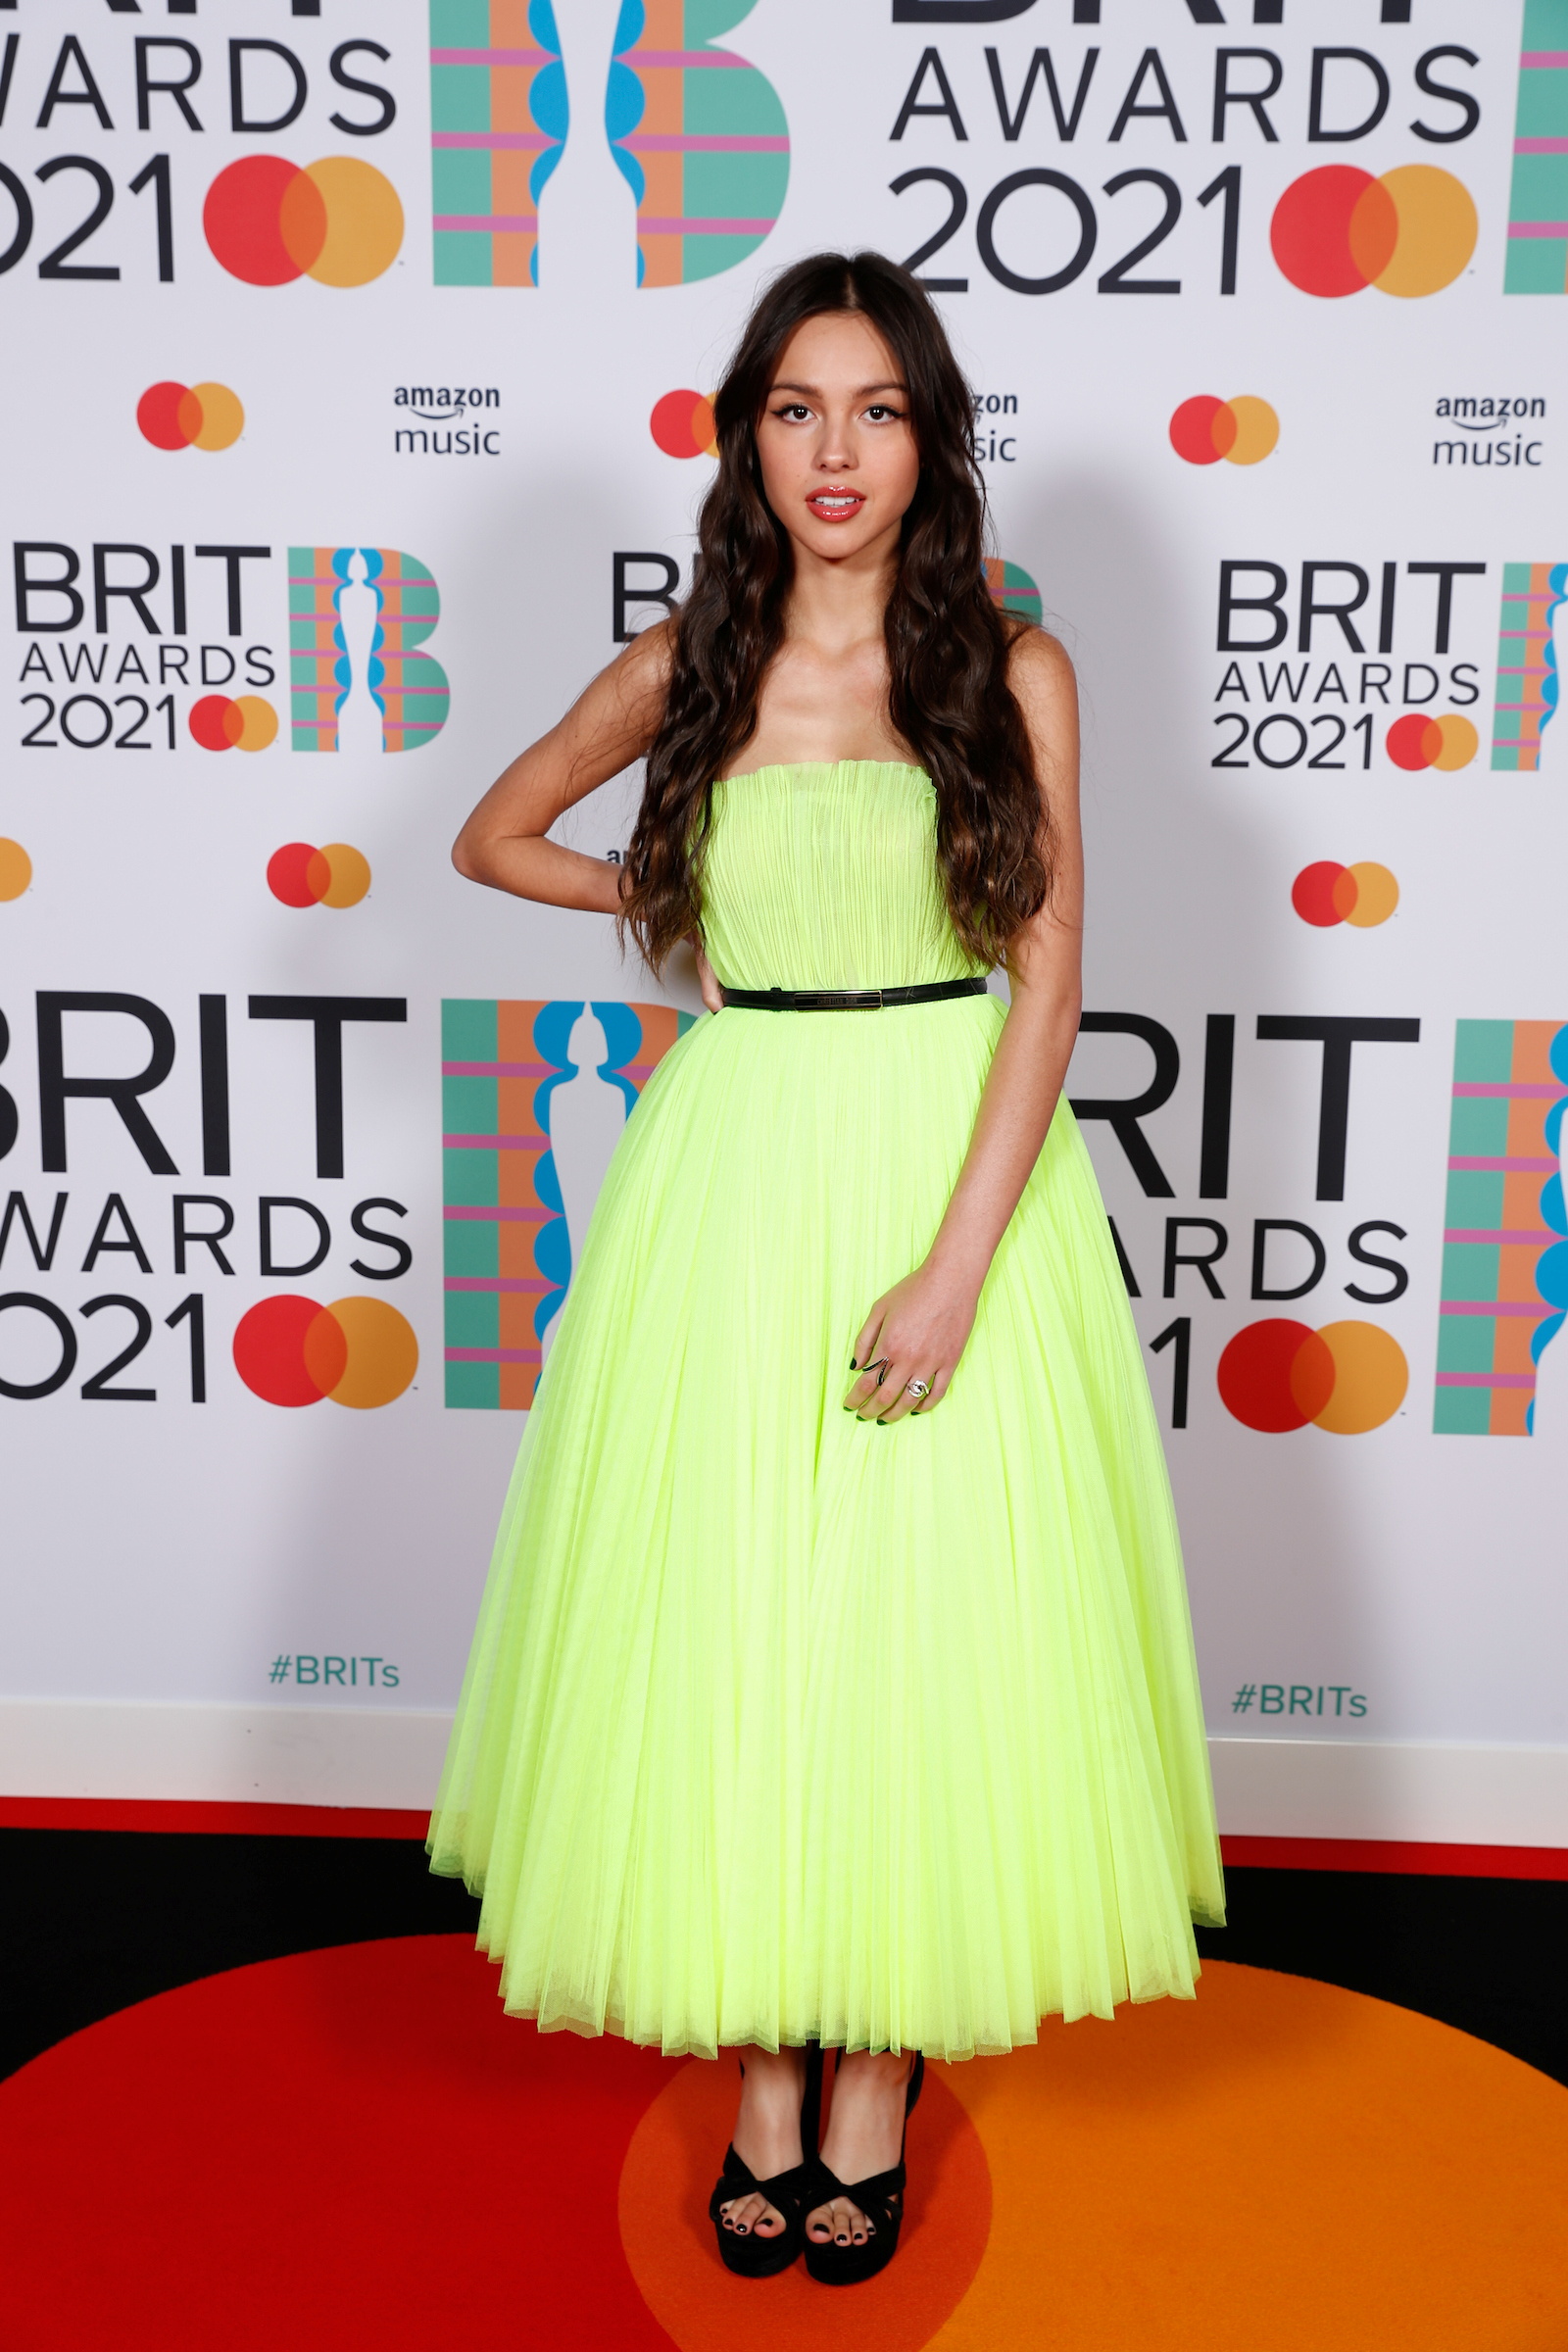 Olivia by Dior. Un diseño plisado de ensueño que encandiló con el verde neón en los Brit Awards 2021 (Reuters)